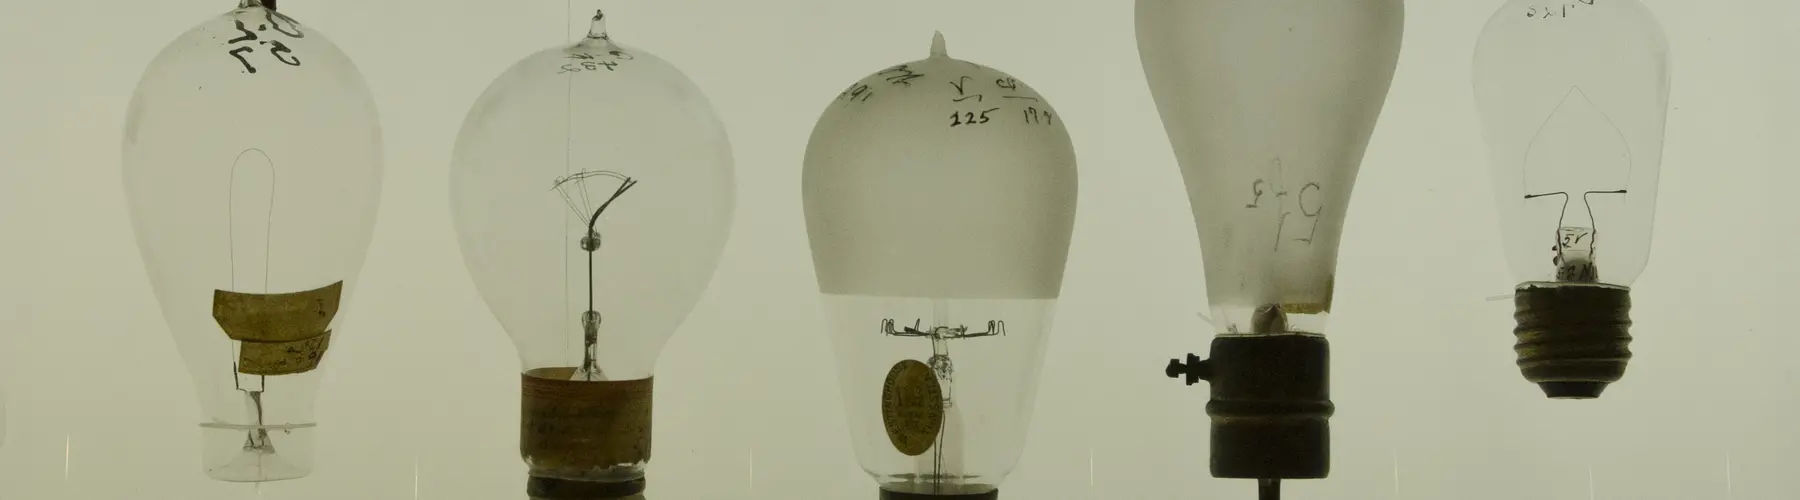 Early Light Bulbs